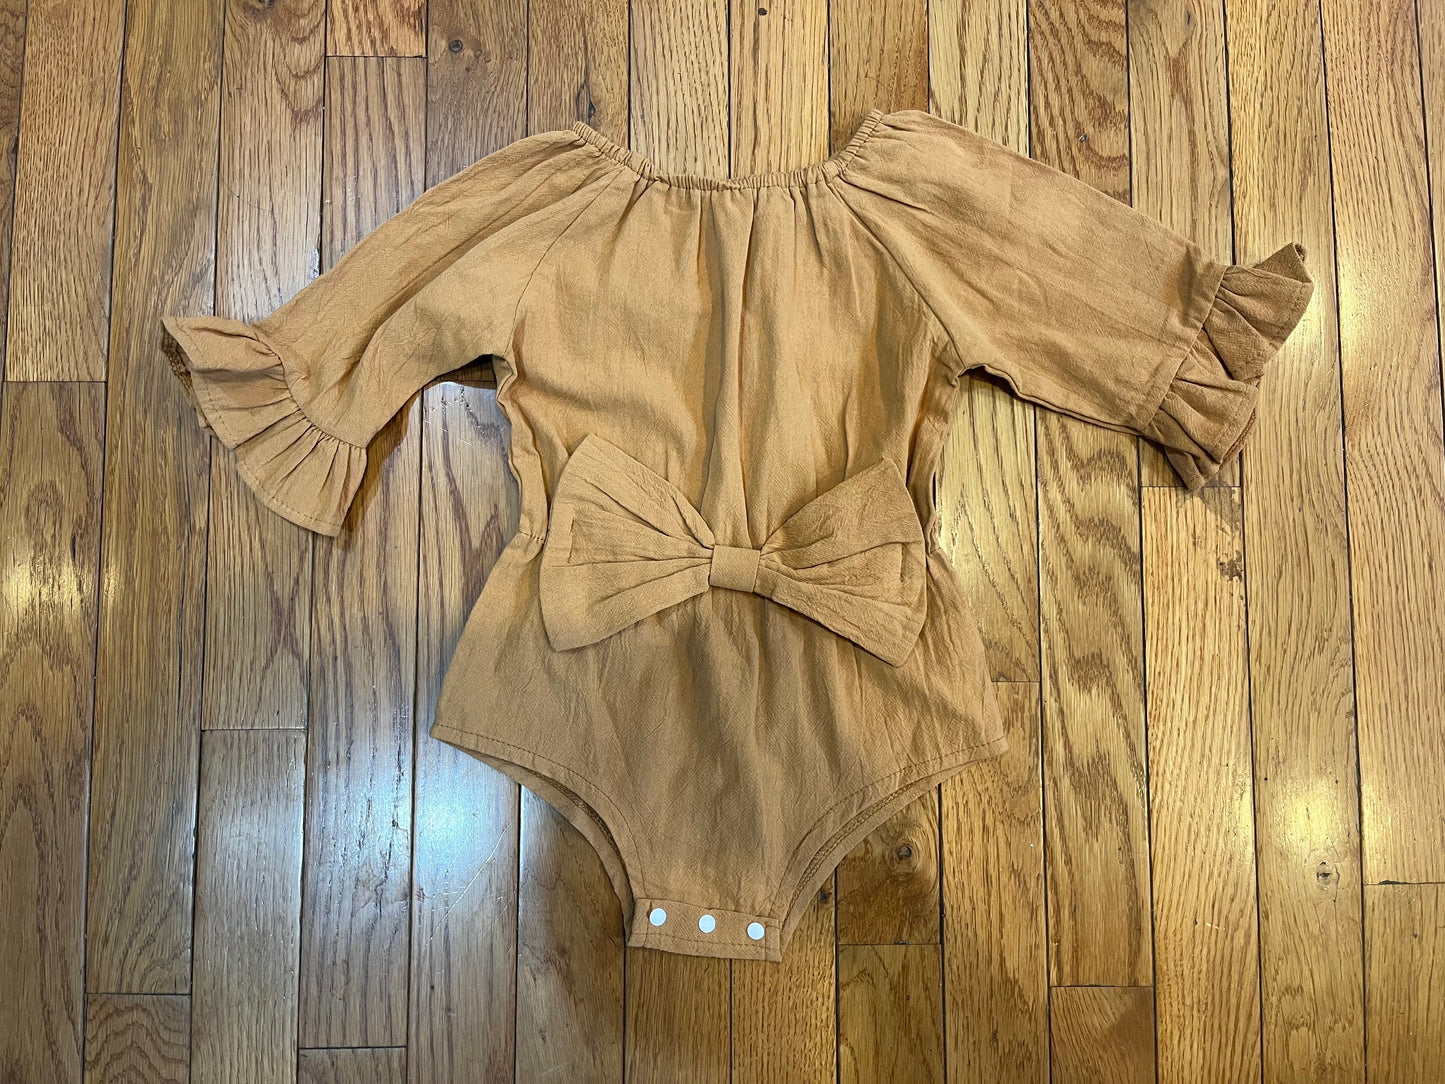 MiniOlie Burnt Orange/Brown Girls Bodysuit - Size 100 (2T) - NWTs